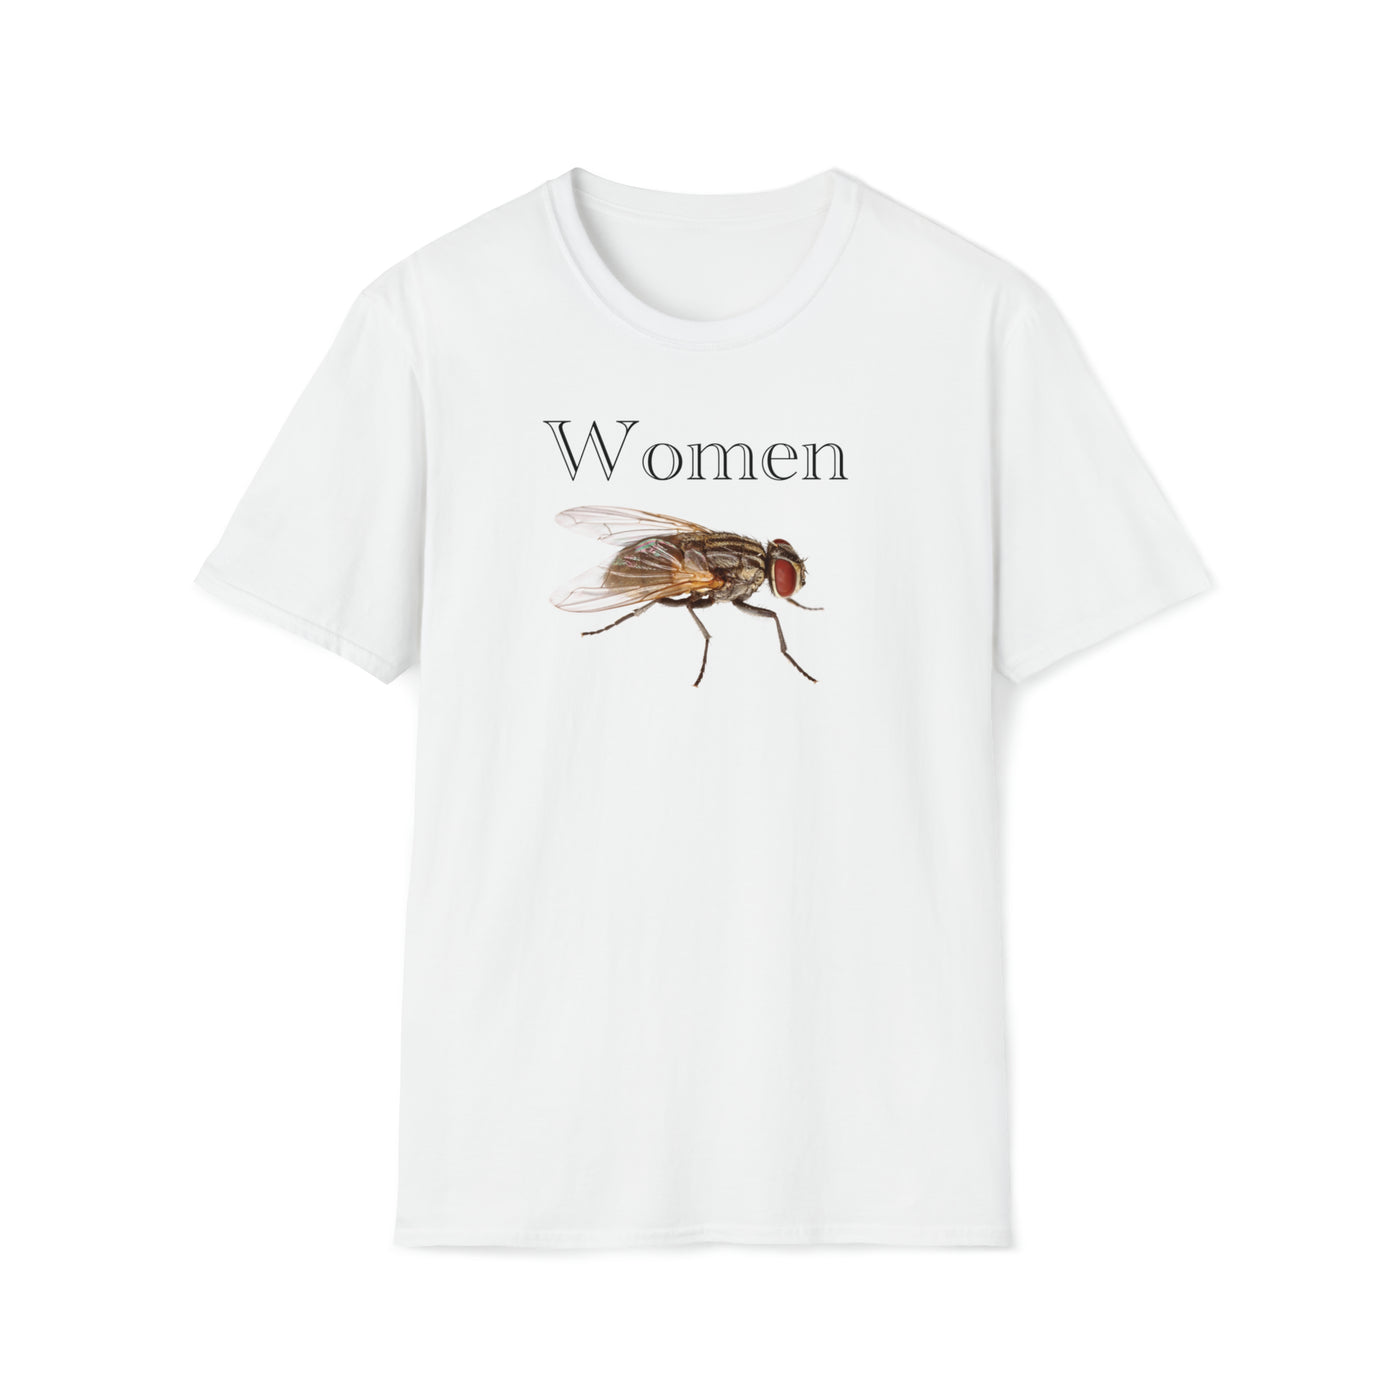 Women Fly Unisex T-Shirt